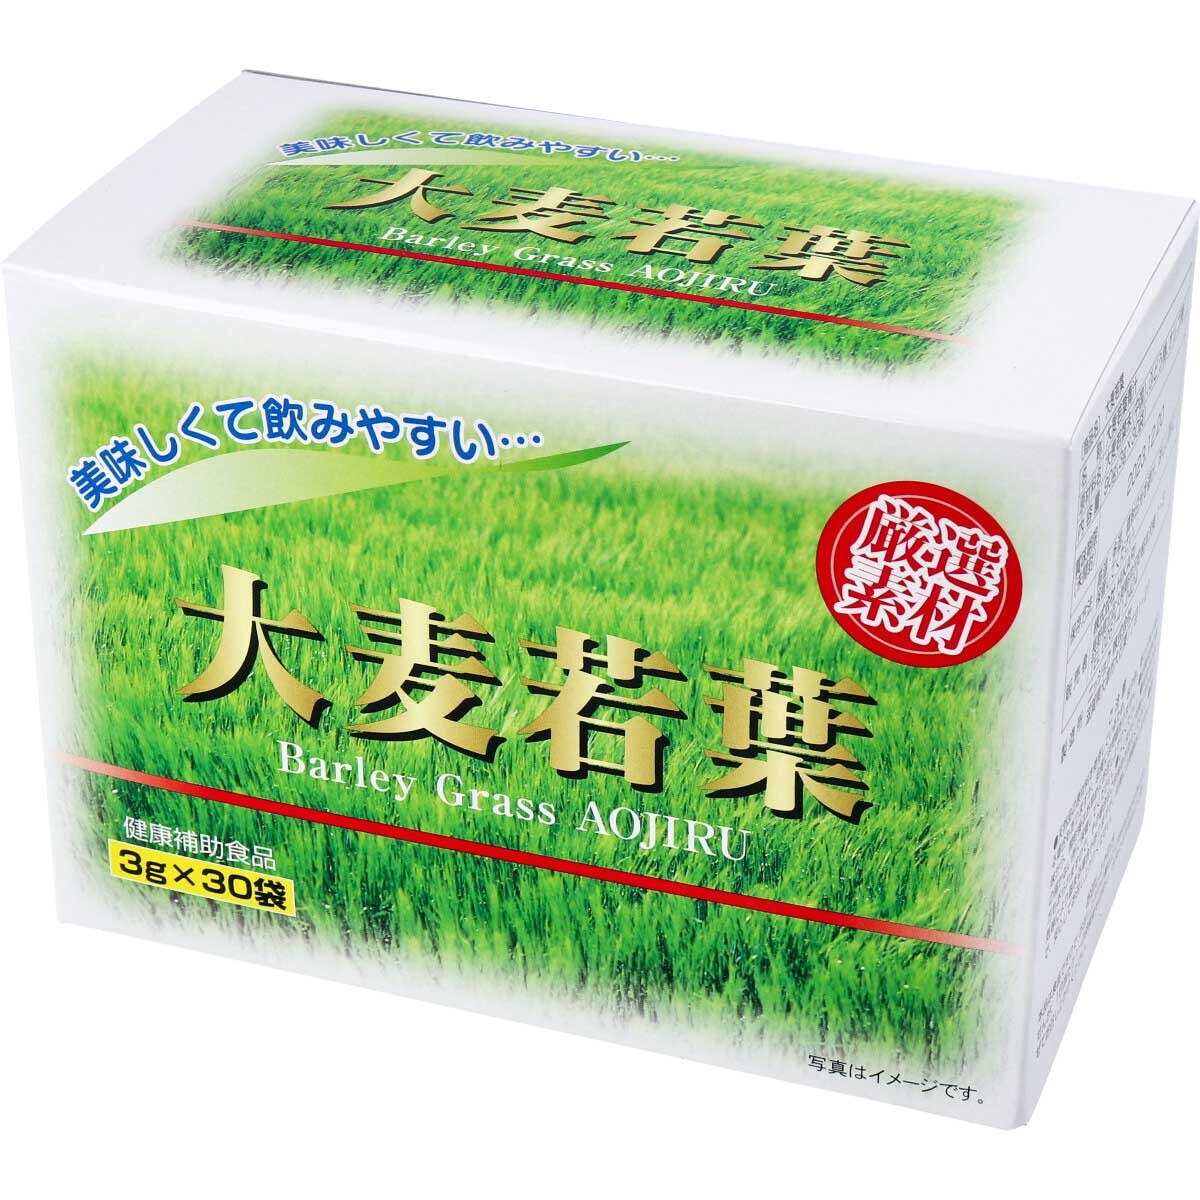 大麦若葉の青汁 3g×30包 ダイエット 健康 漢方 青汁 